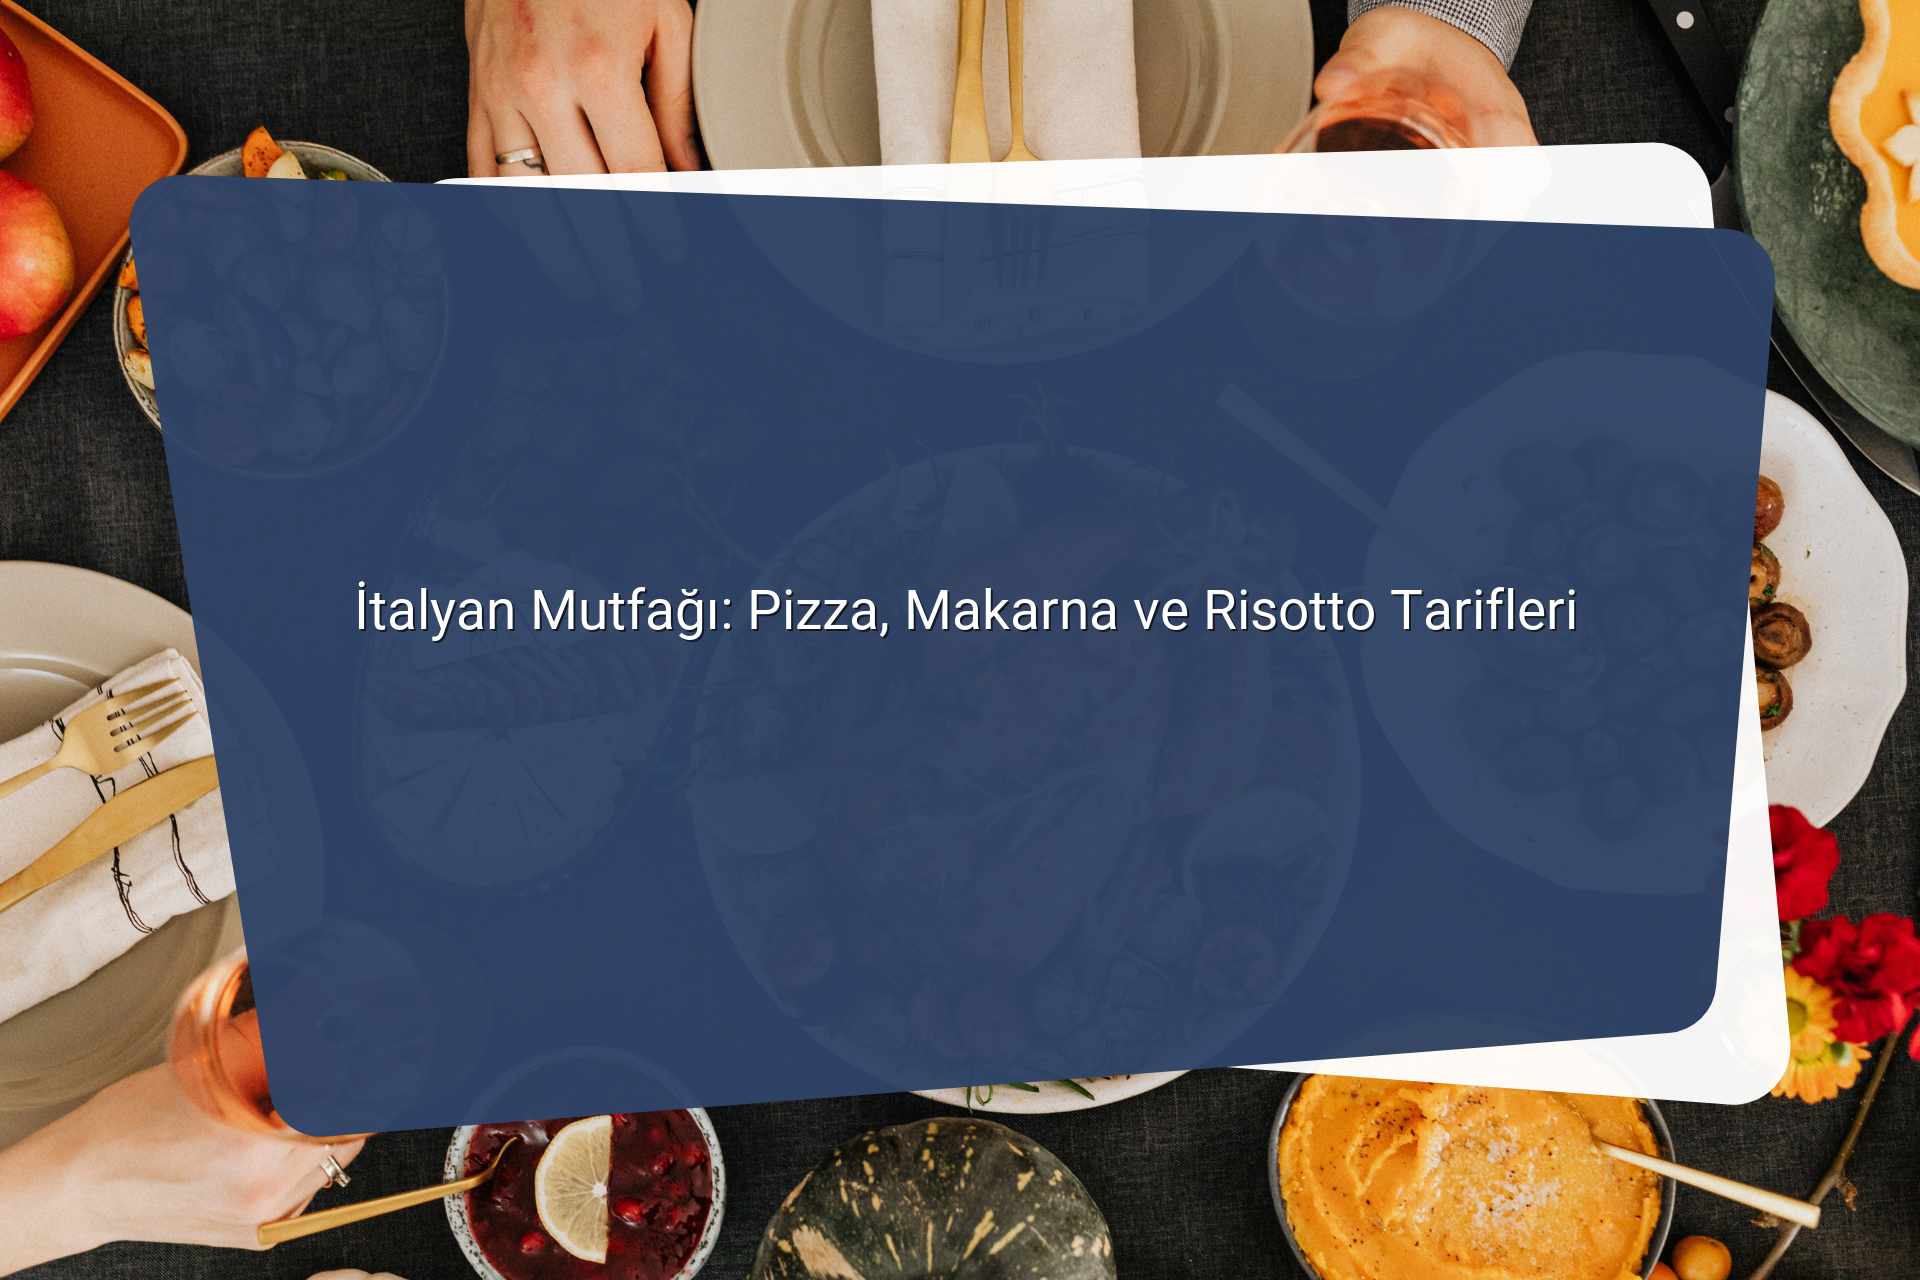 Italyan Mutfagi Pizza Makarna ve Risotto Tarifleri